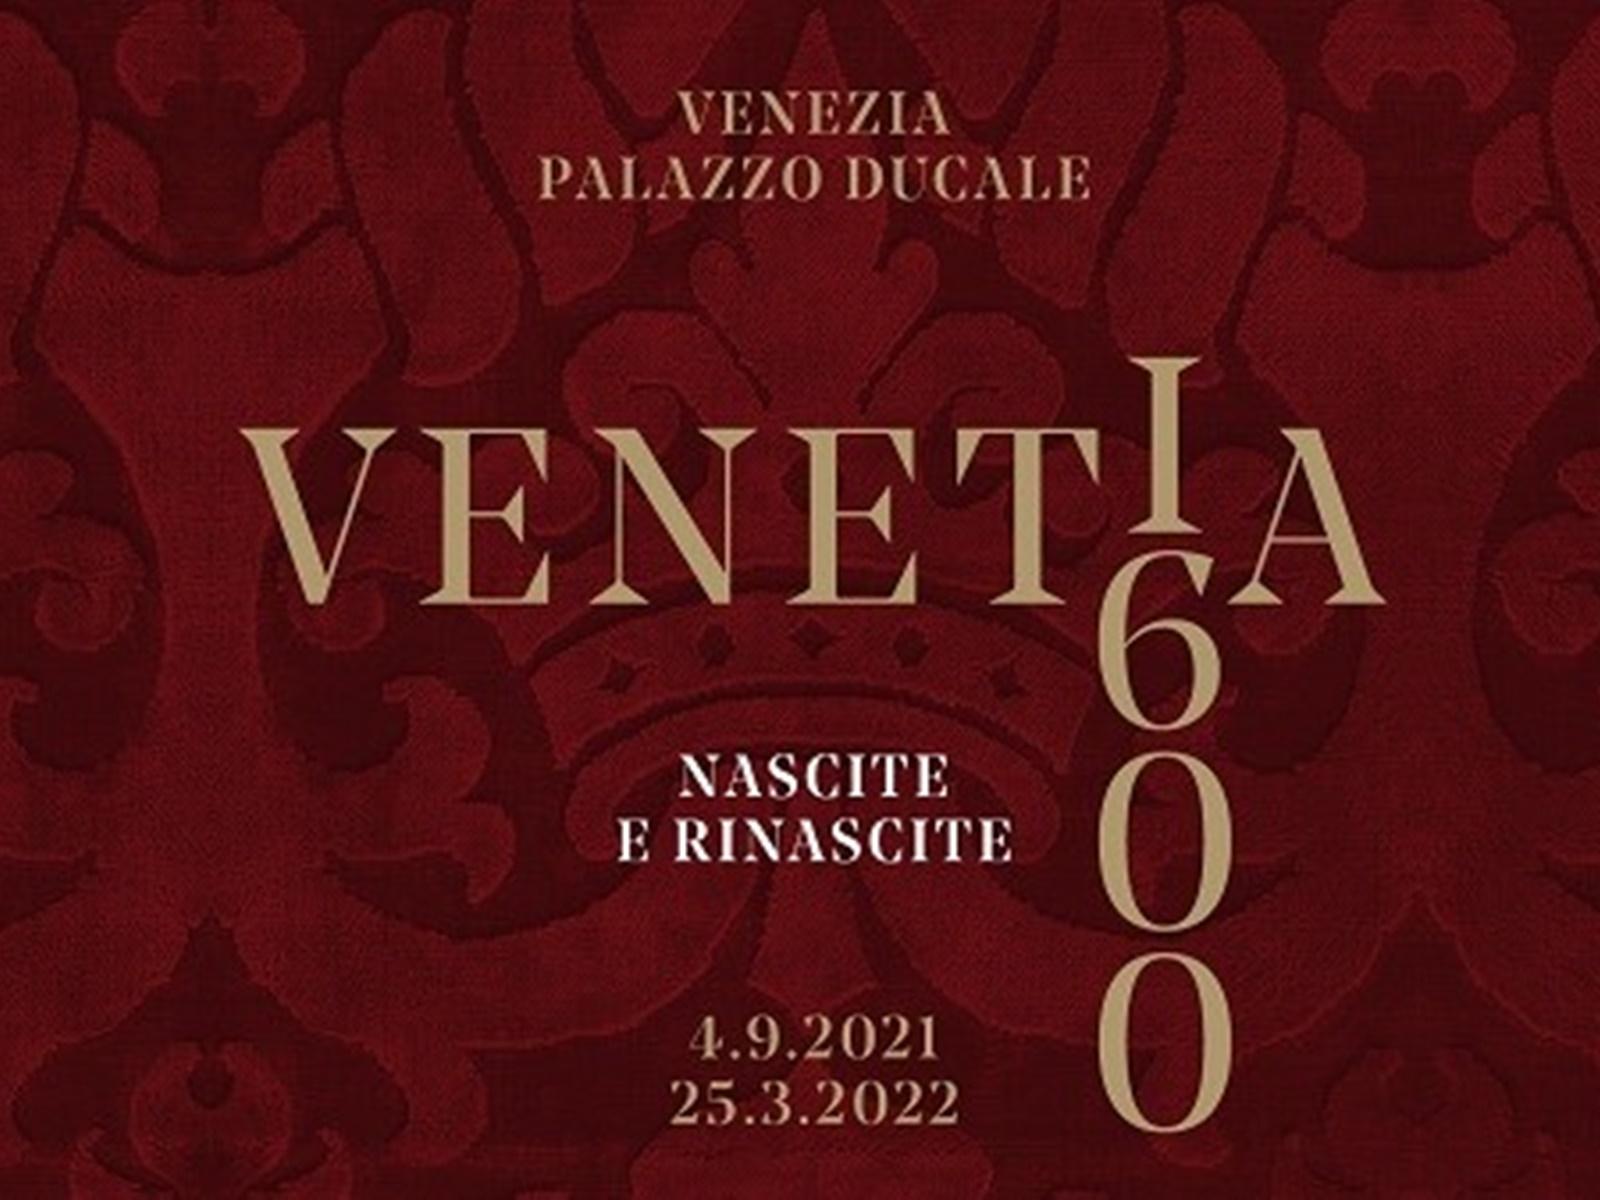 Venetia 1600. Nascita e rinascite